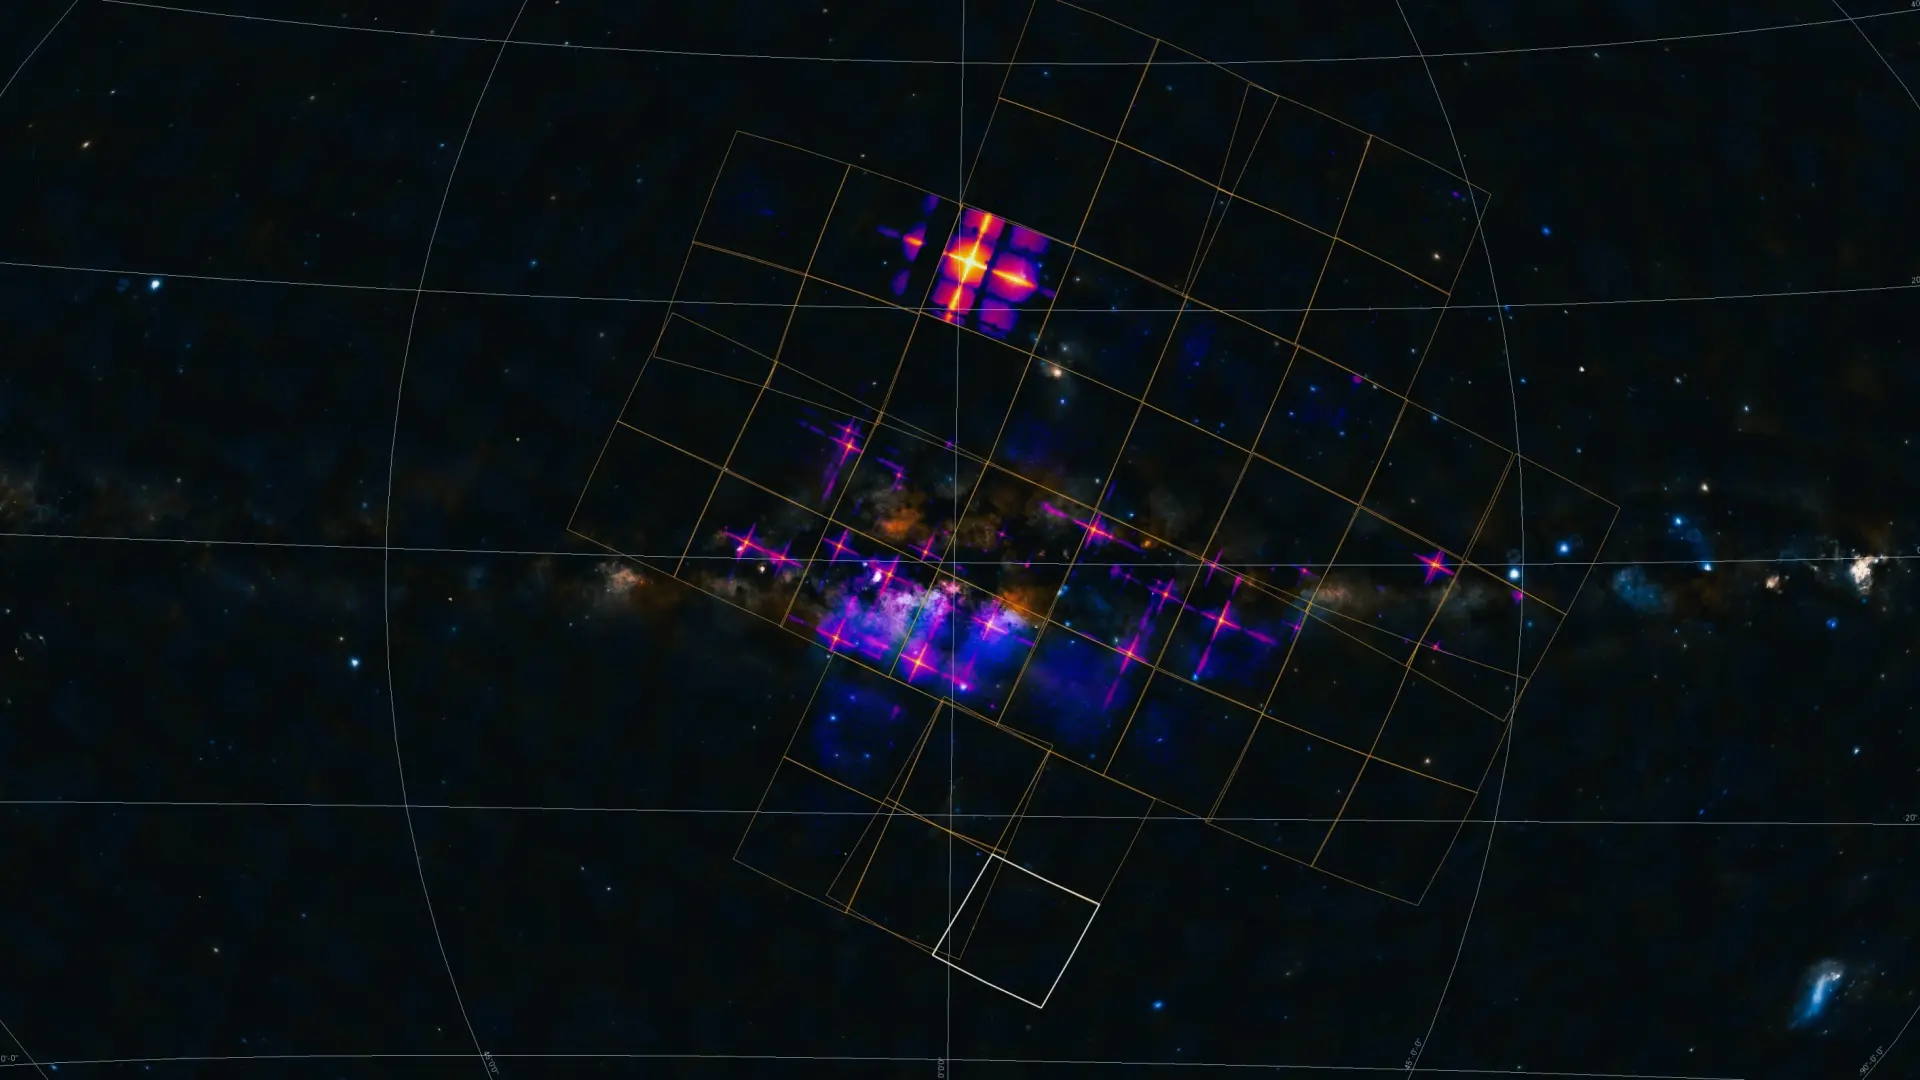 China desvela las primeras imágenes del cosmos de la sonda Einstein Probe